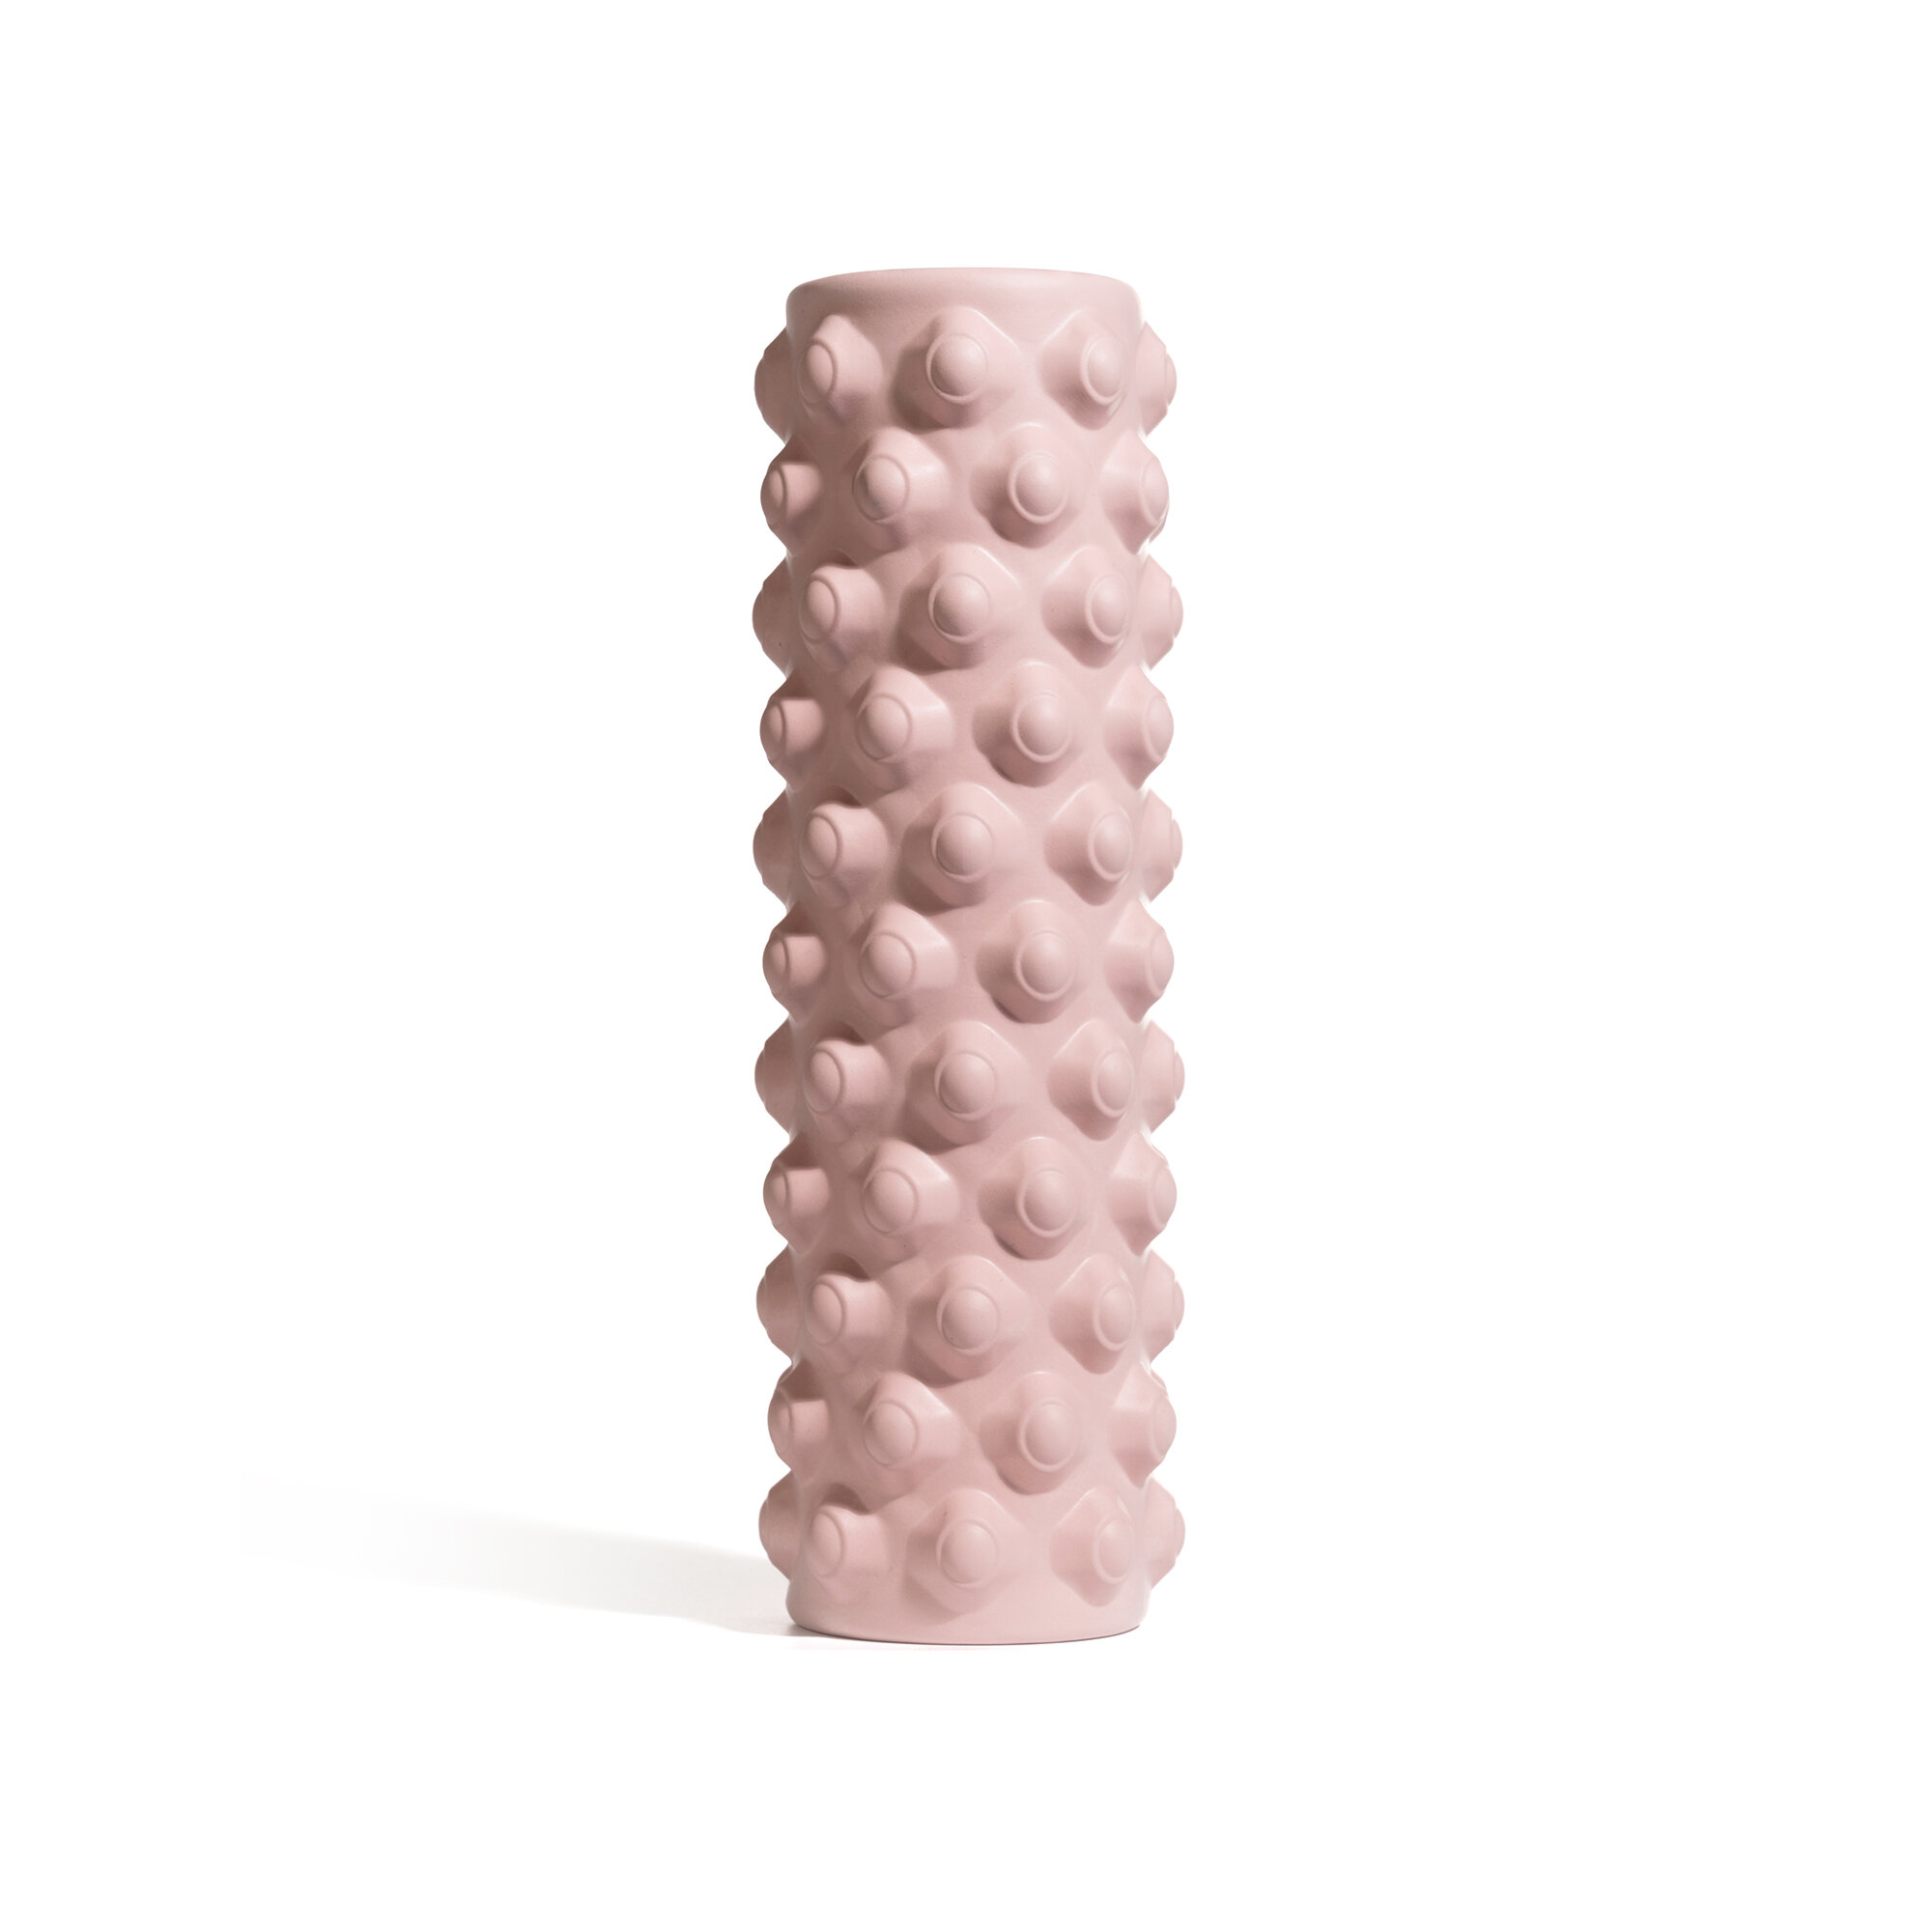 Валик для спины, массажный ролик, массажер мфр Kama, 30x10 см, розовый